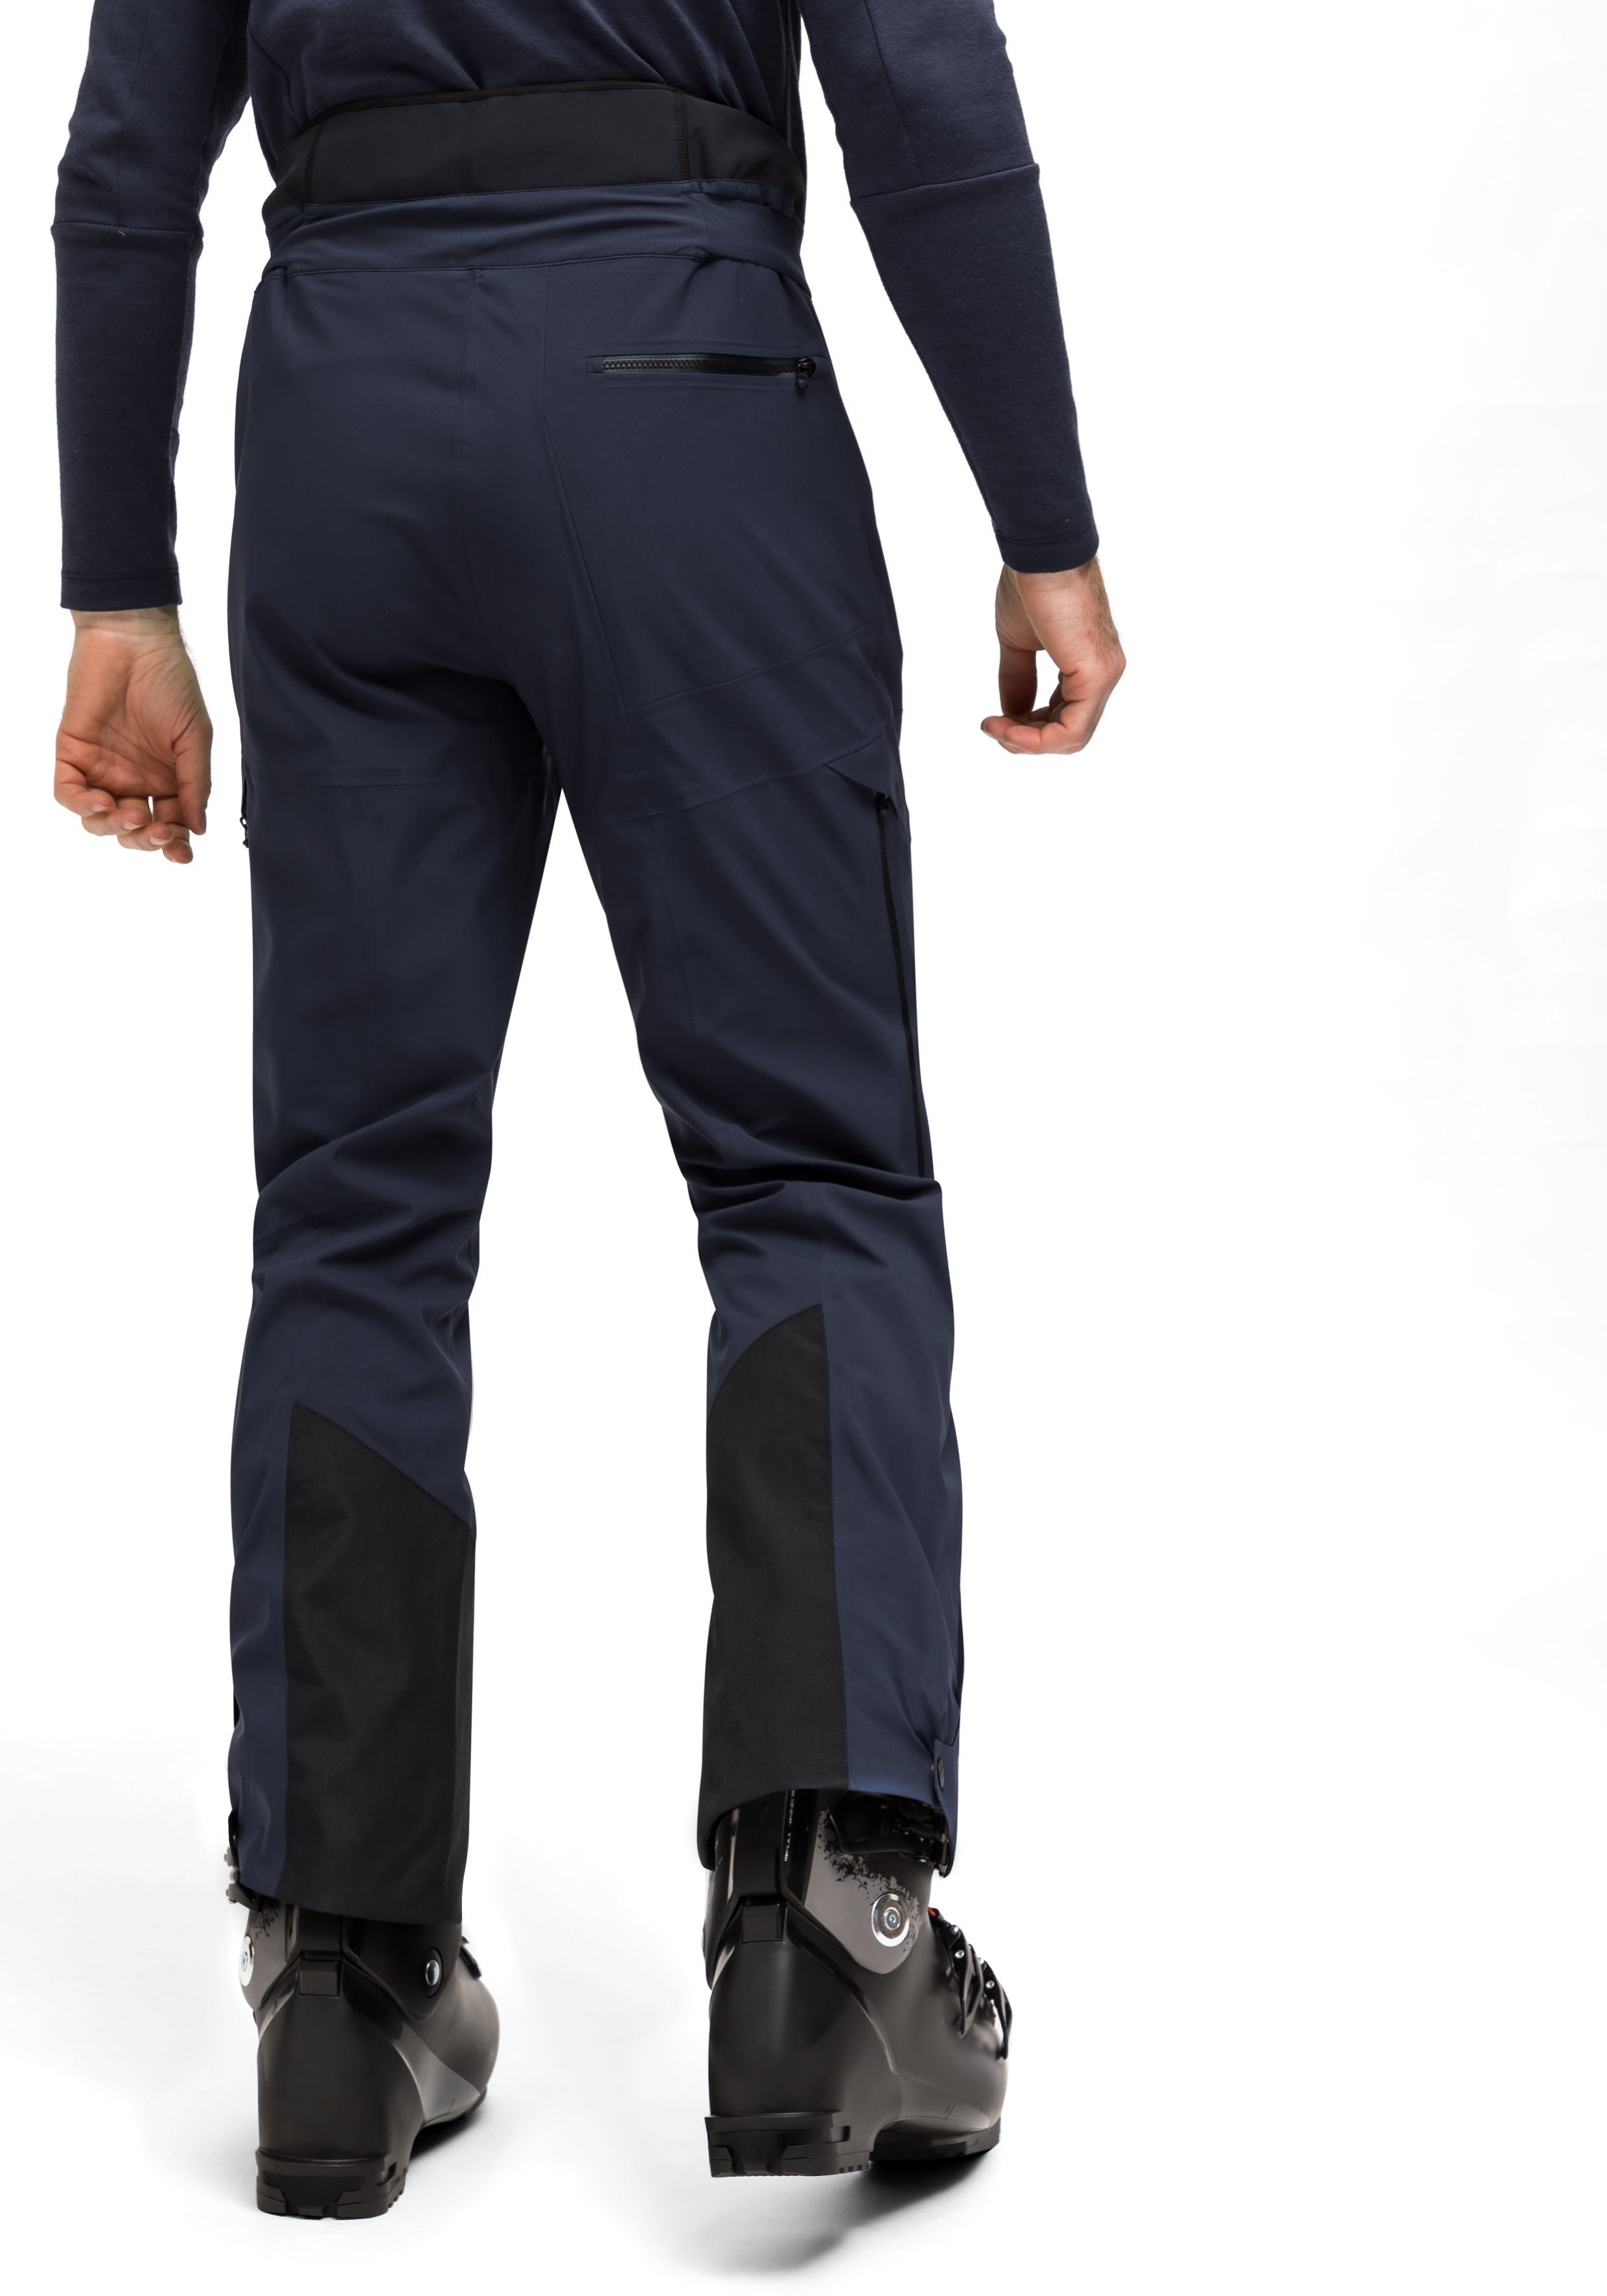 Vielseitige Pants für P3 Funktionshose anspruchsvollen Liland 3-Lagen-Hose Sports Outdoor-Einsatz M Maier